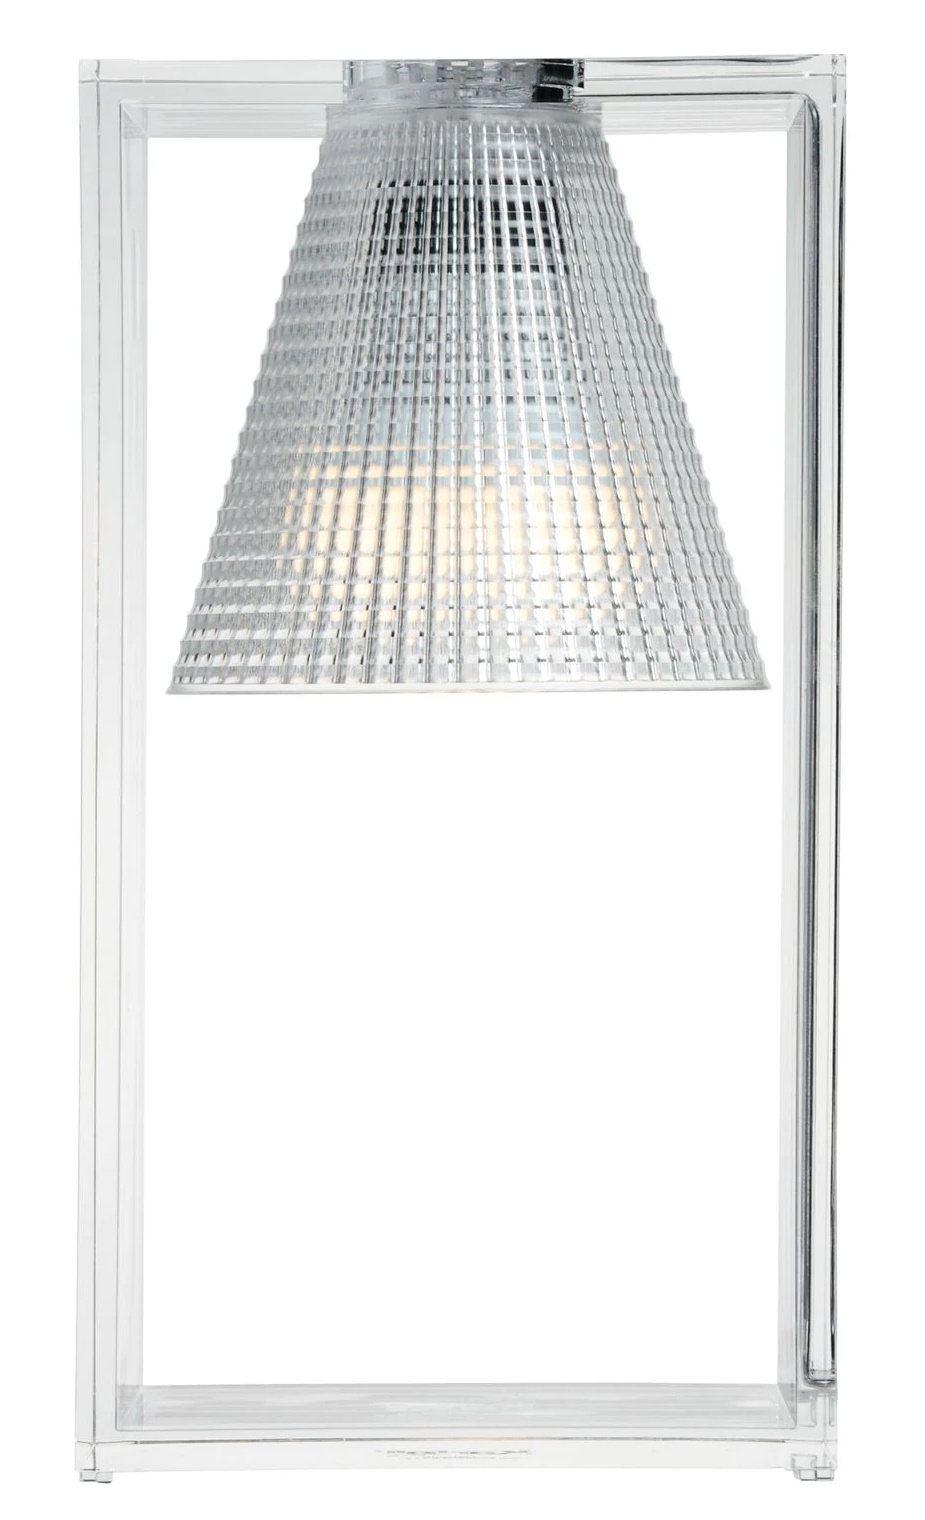 Veioza Kartell Light Air design Eugeni Quitllet 32x17x14cm transparent Kartell imagine reduss.ro 2022